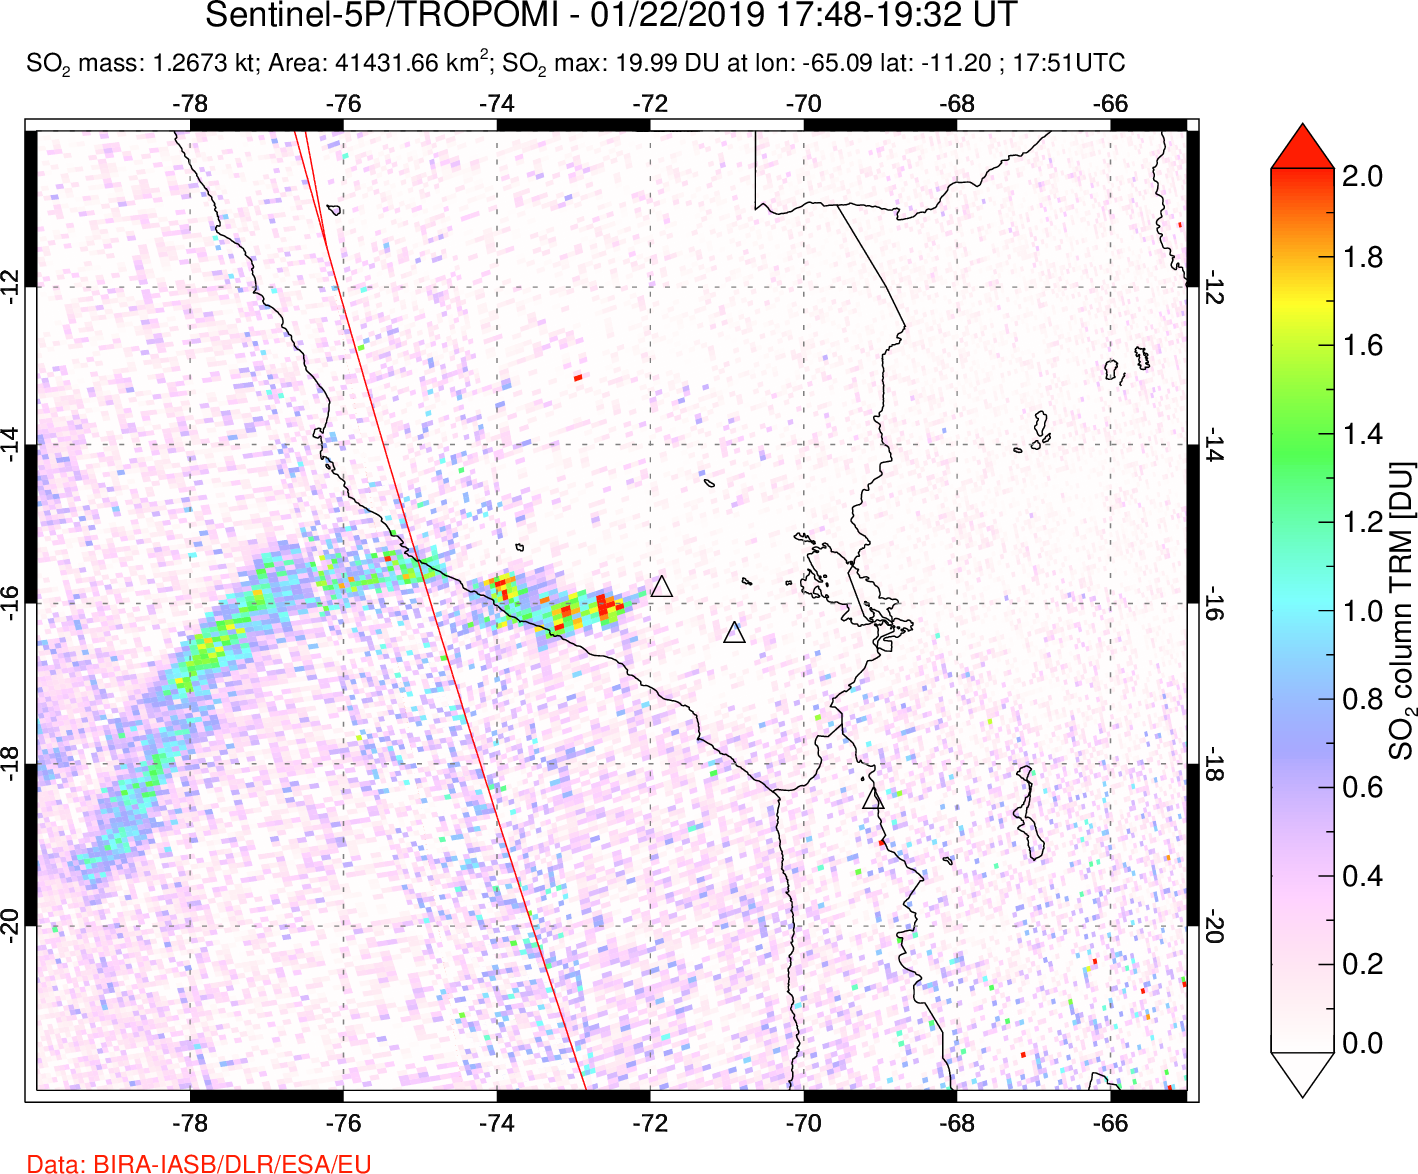 A sulfur dioxide image over Peru on Jan 22, 2019.